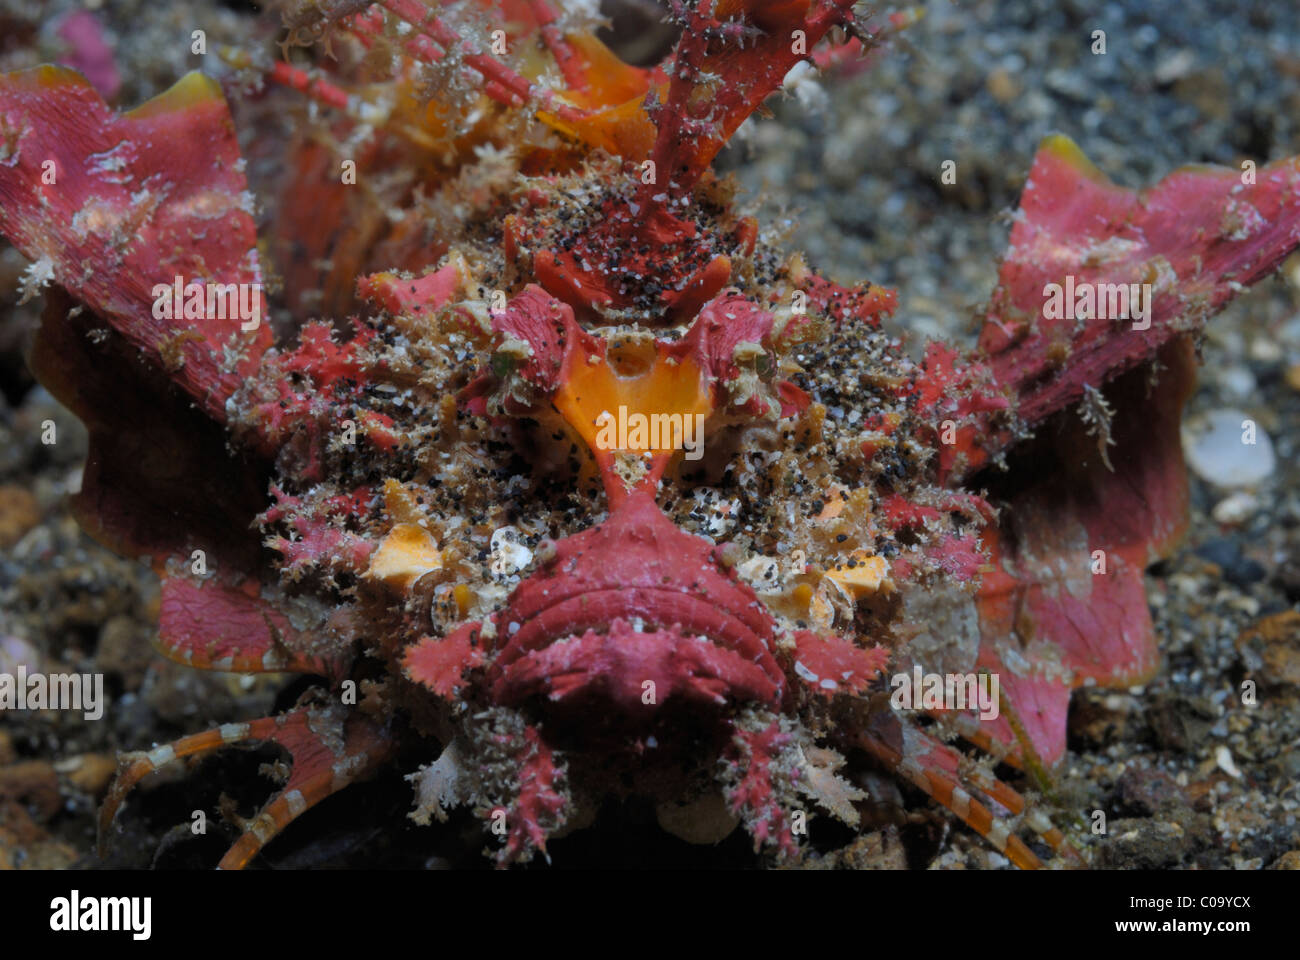 Les devilfish (inimicus didactylus). Le Détroit de Lembeh, mer de Célèbes, au nord de Sulawesi, Indonésie. Banque D'Images